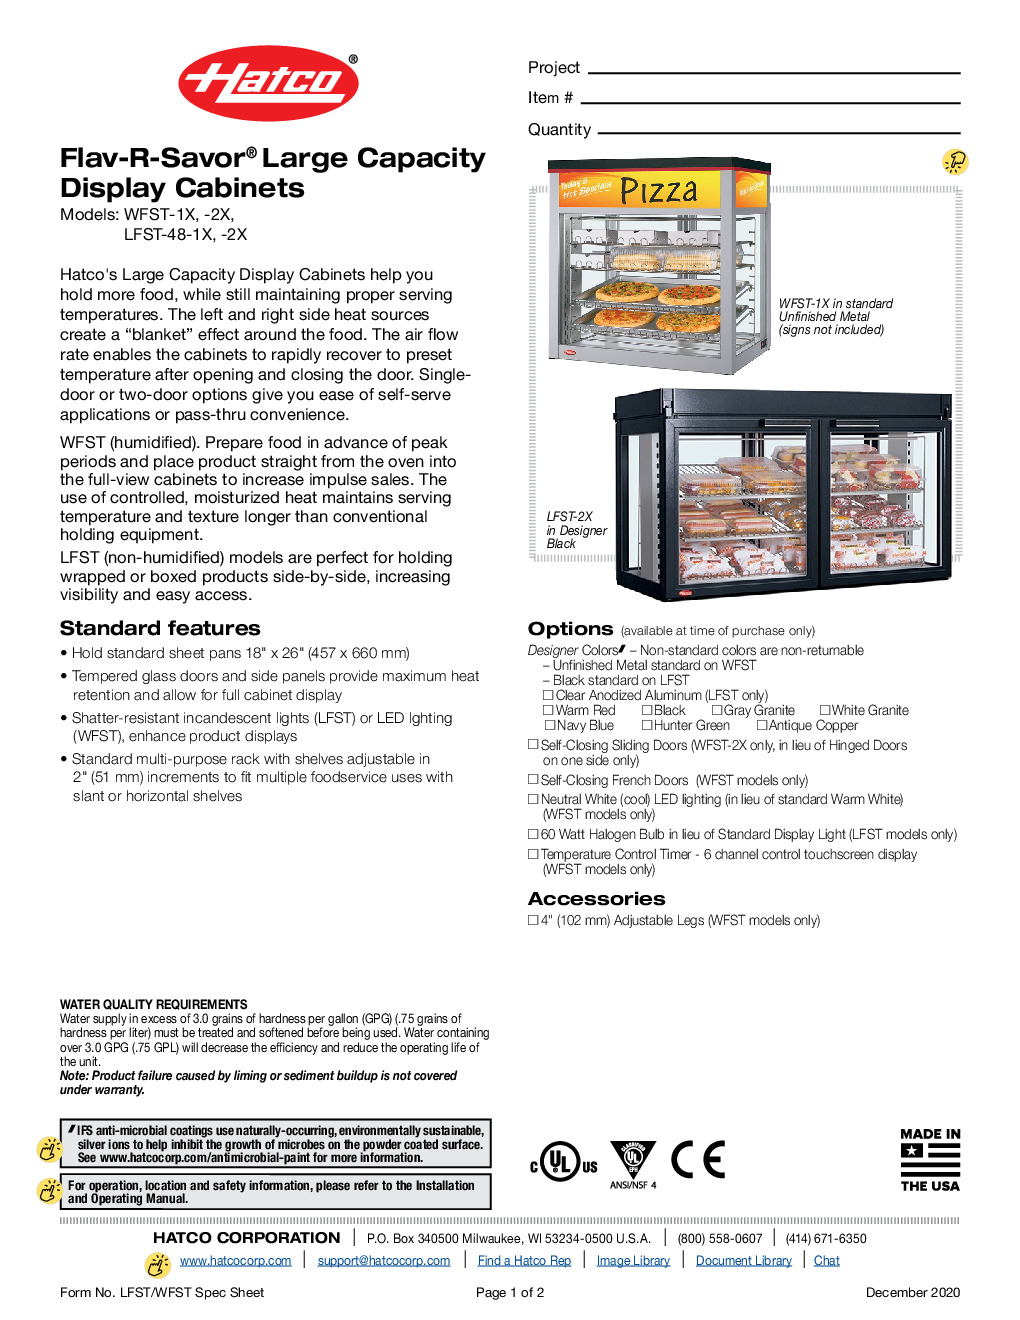 Hatco WFST-2X Countertop Hot Food Display Case